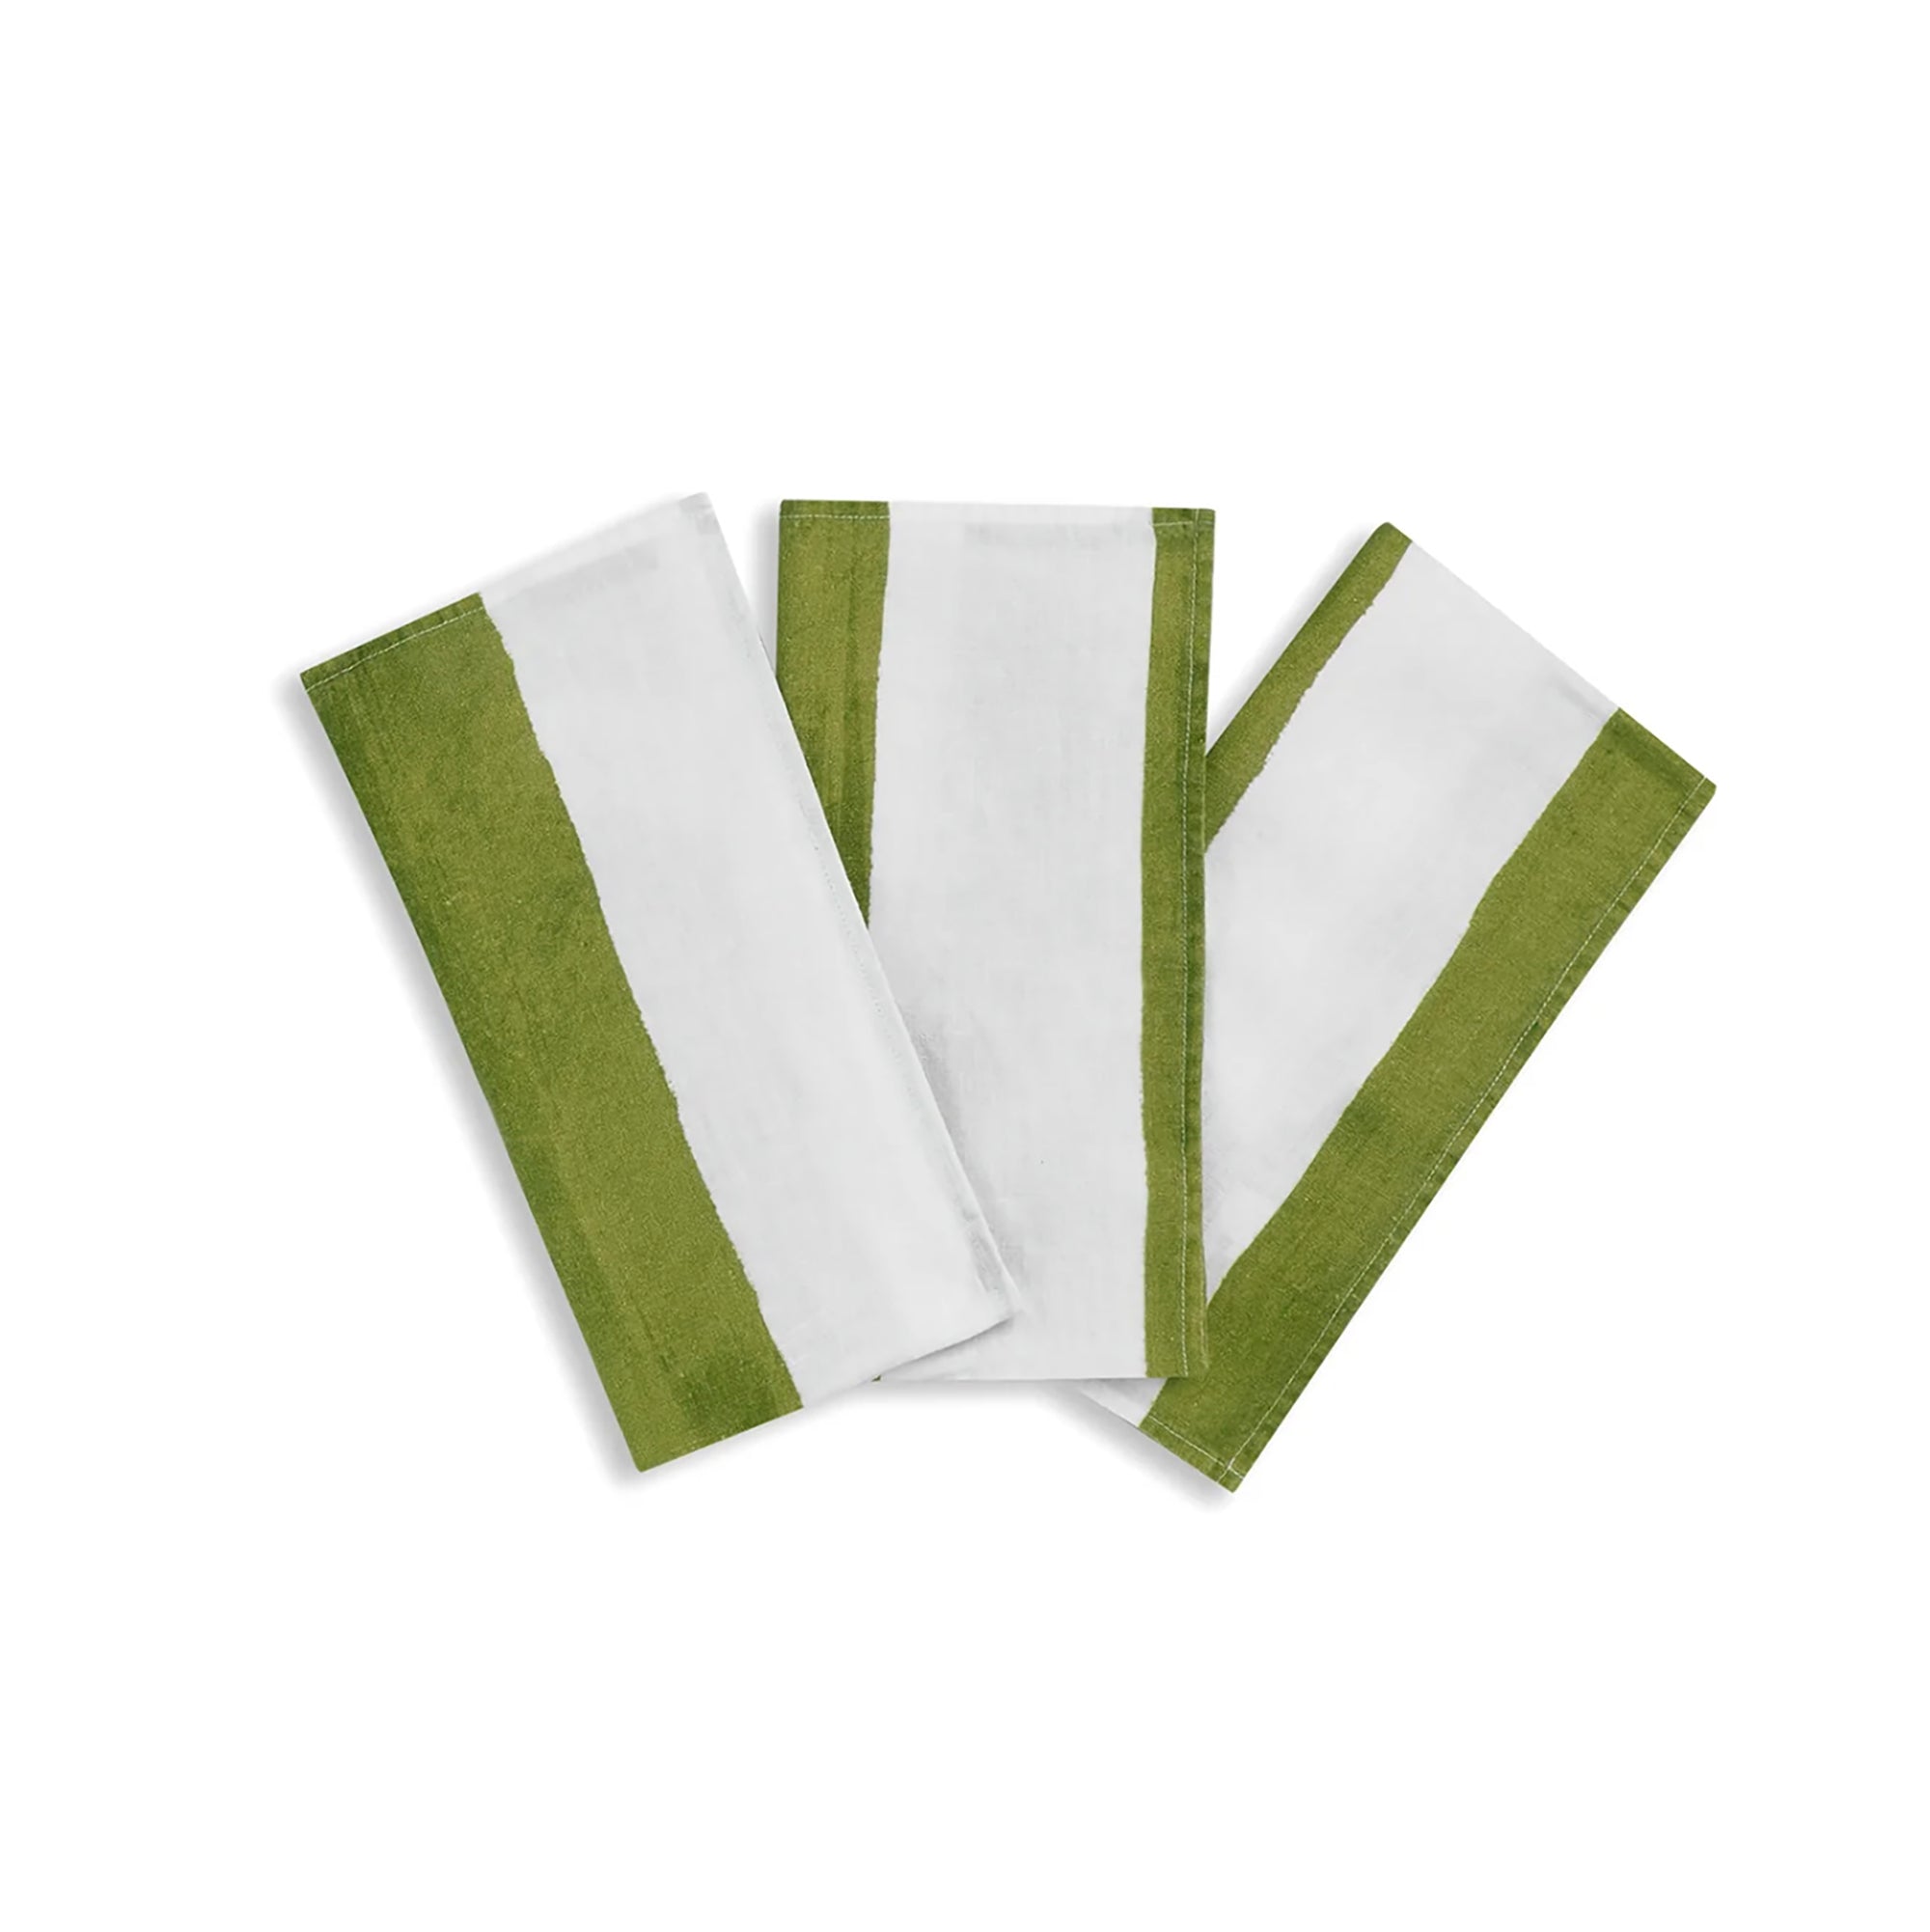 Stripe Linen Napkins - Green & White (set of 4)